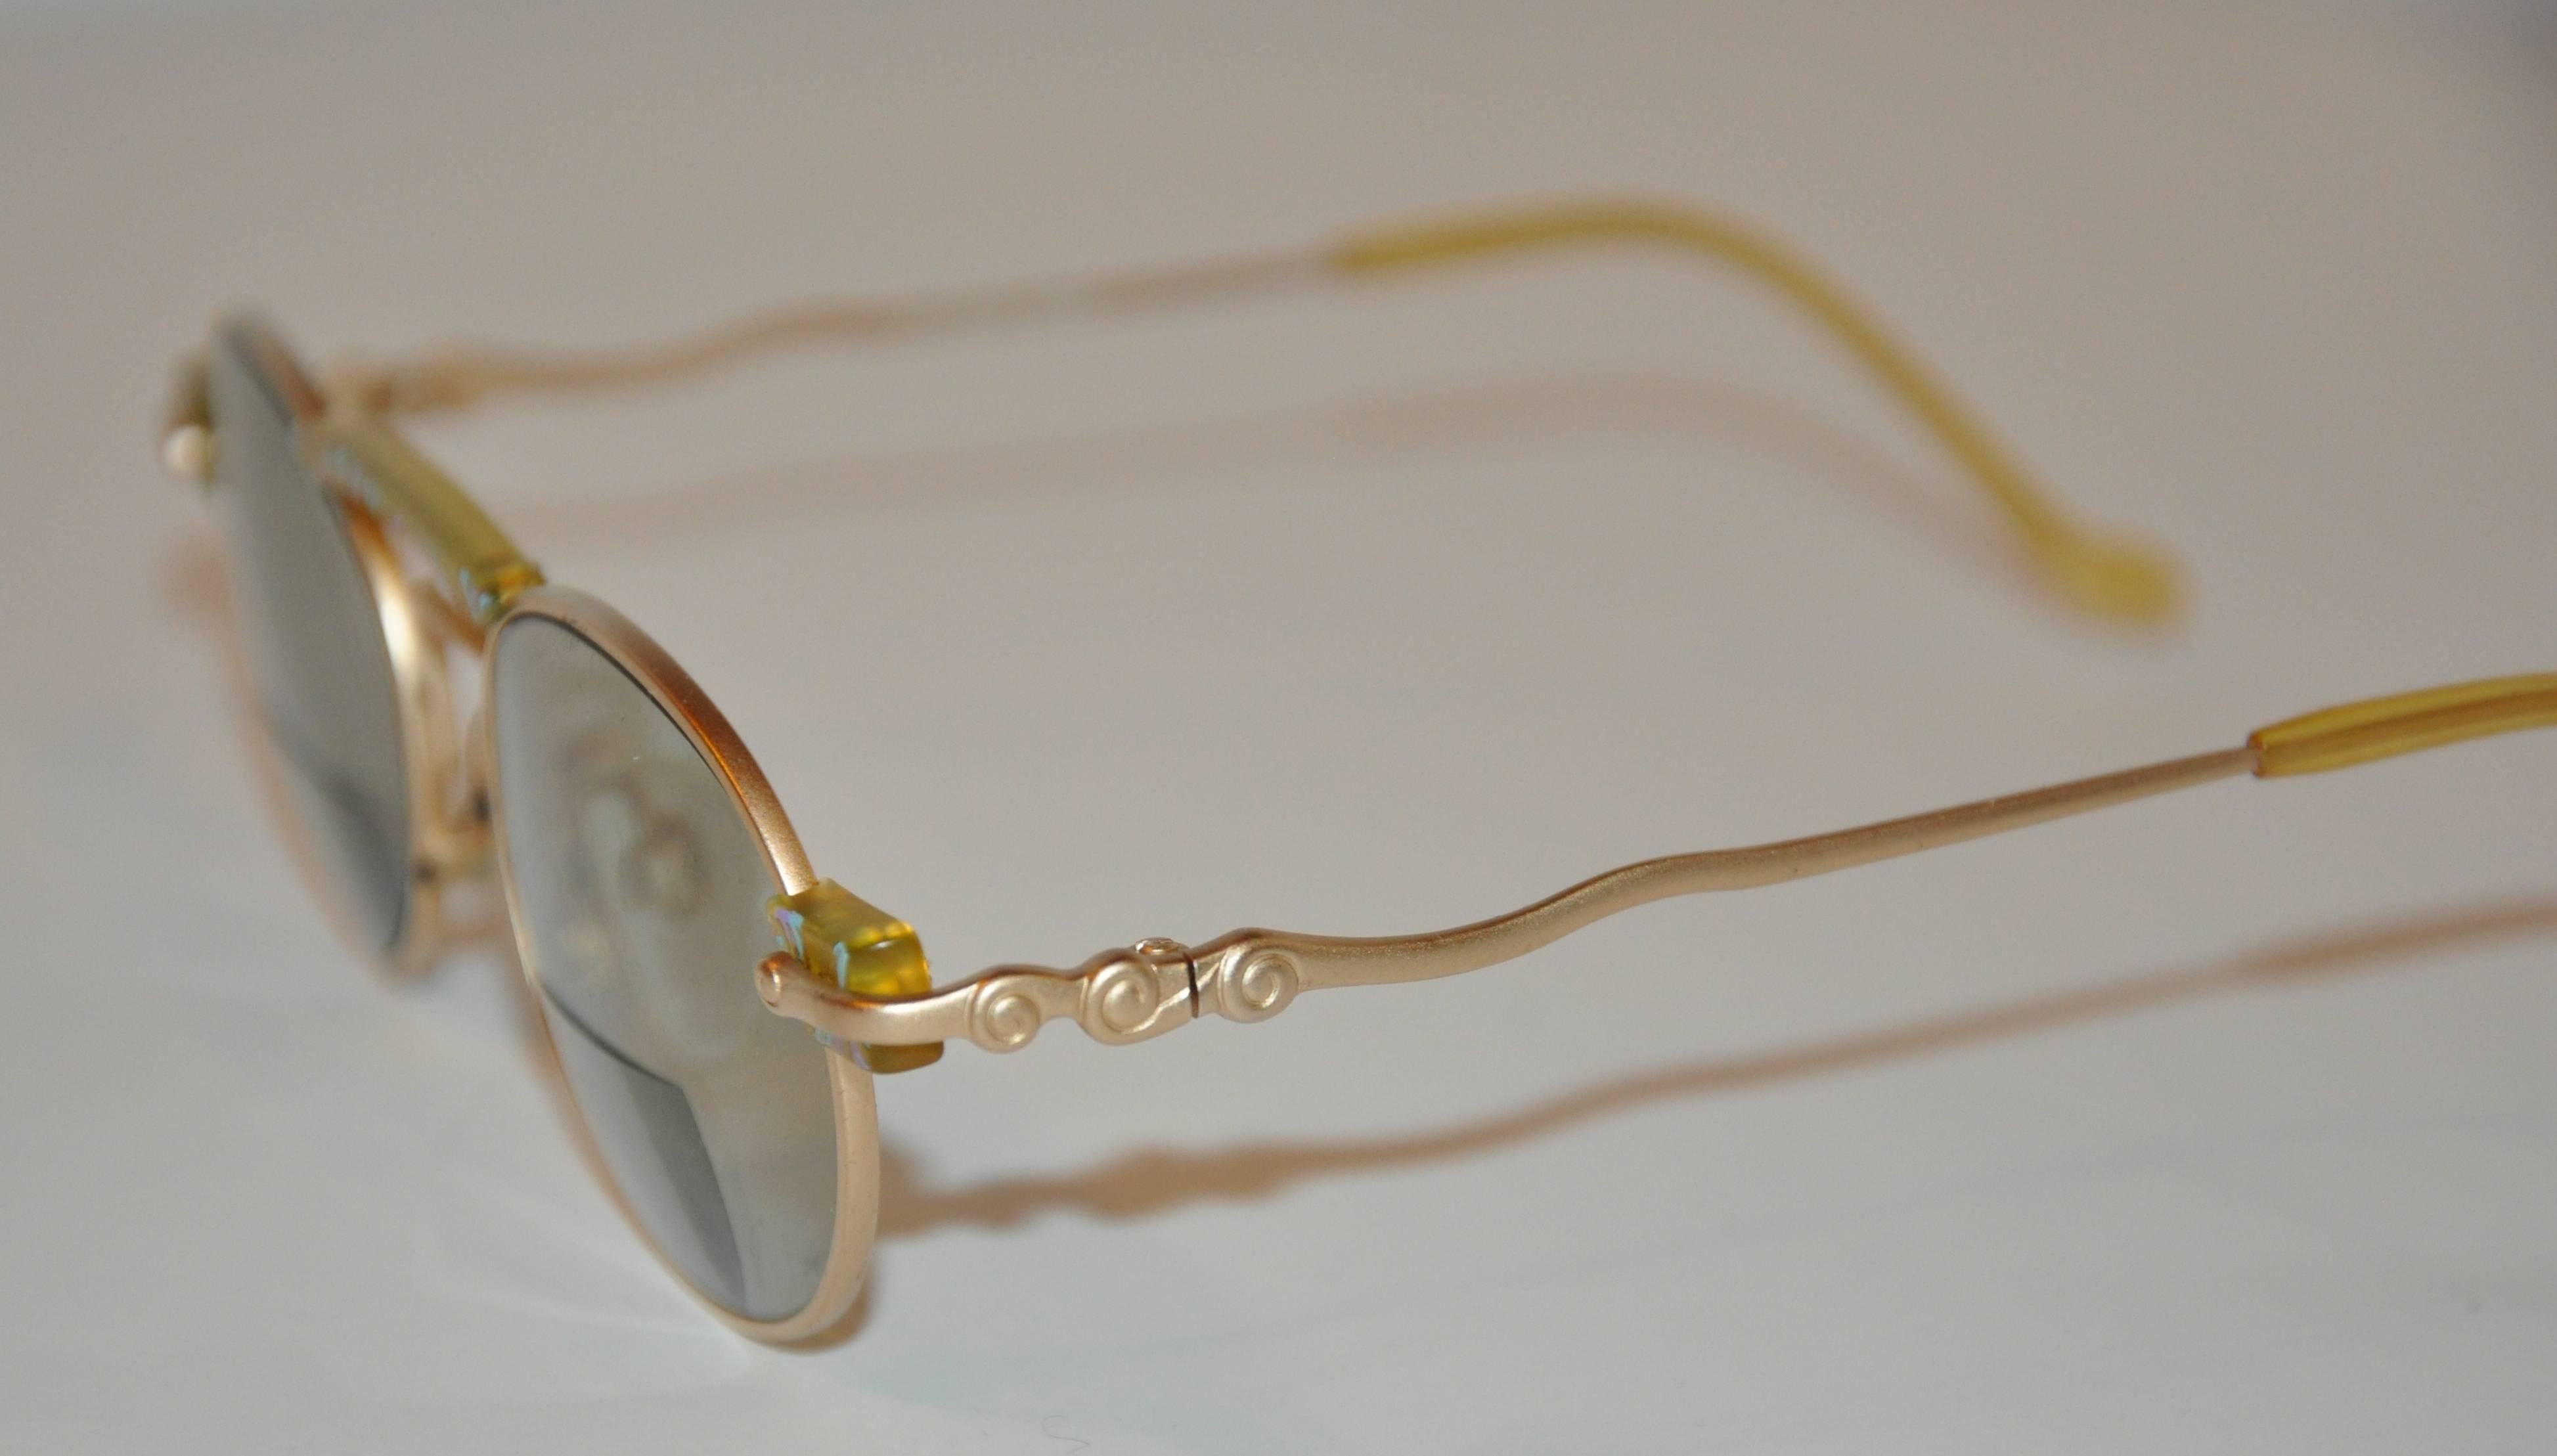 Les lunettes de soleil Kansai Yamamoto avec verres correcteurs sont ornées de 